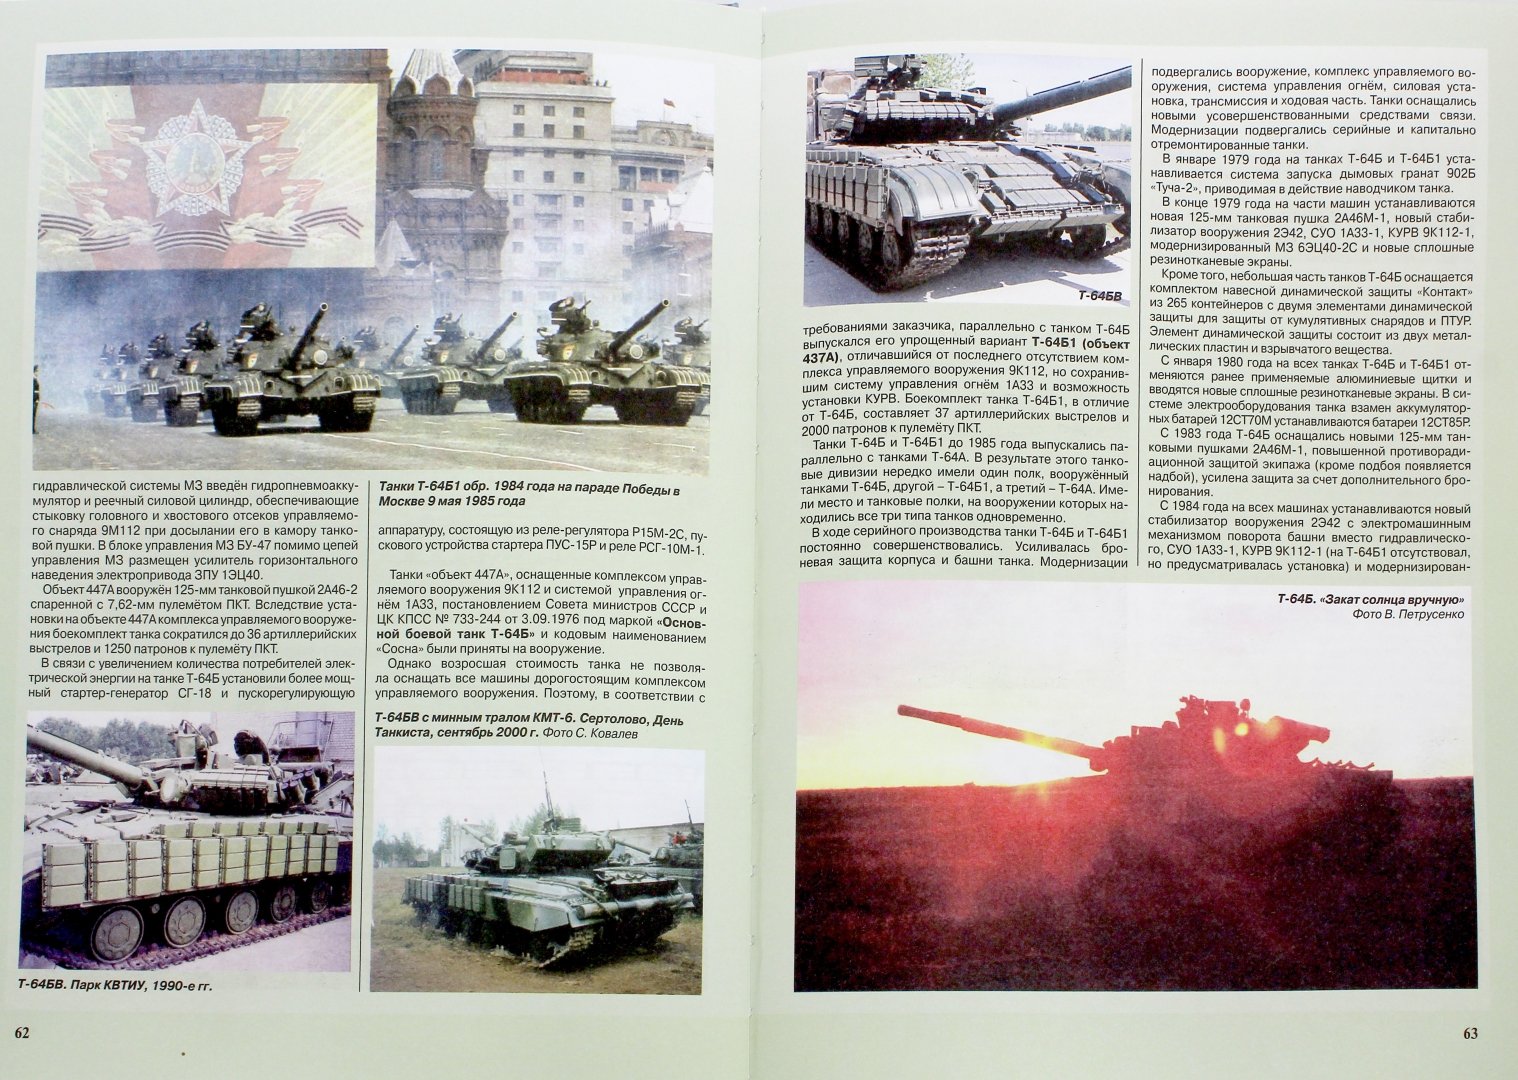 Иллюстрация 1 из 5 для Основной боевой танк Т-64. 50 лет в строю - Чобиток, Саенко, Тарасенко, Чернышев | Лабиринт - книги. Источник: Лабиринт